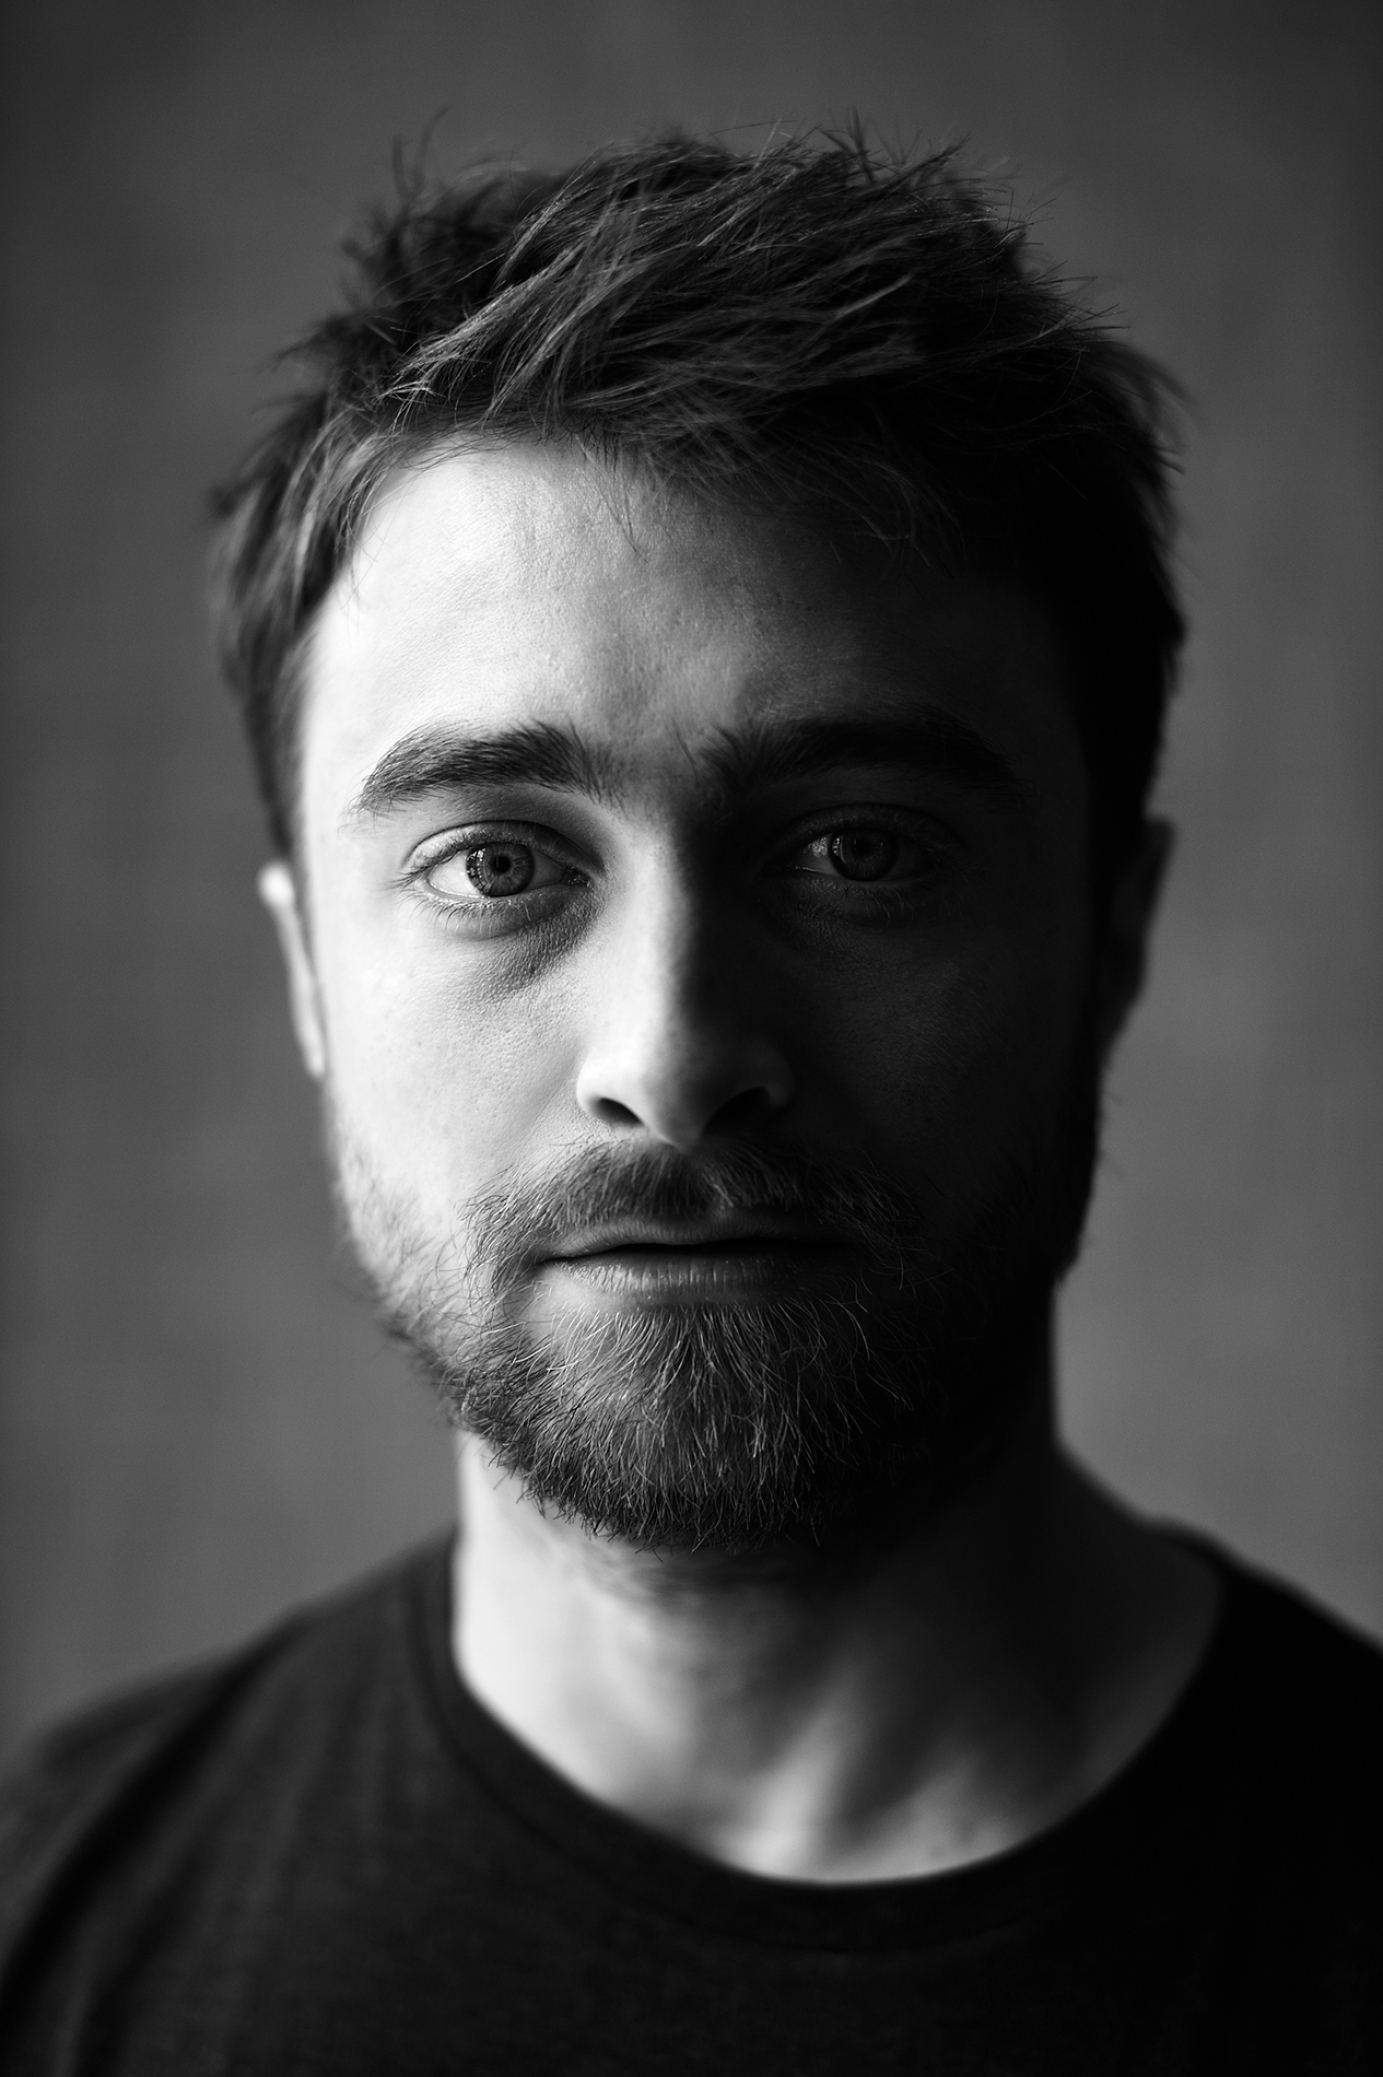 Daniel Radcliffe portrait photos